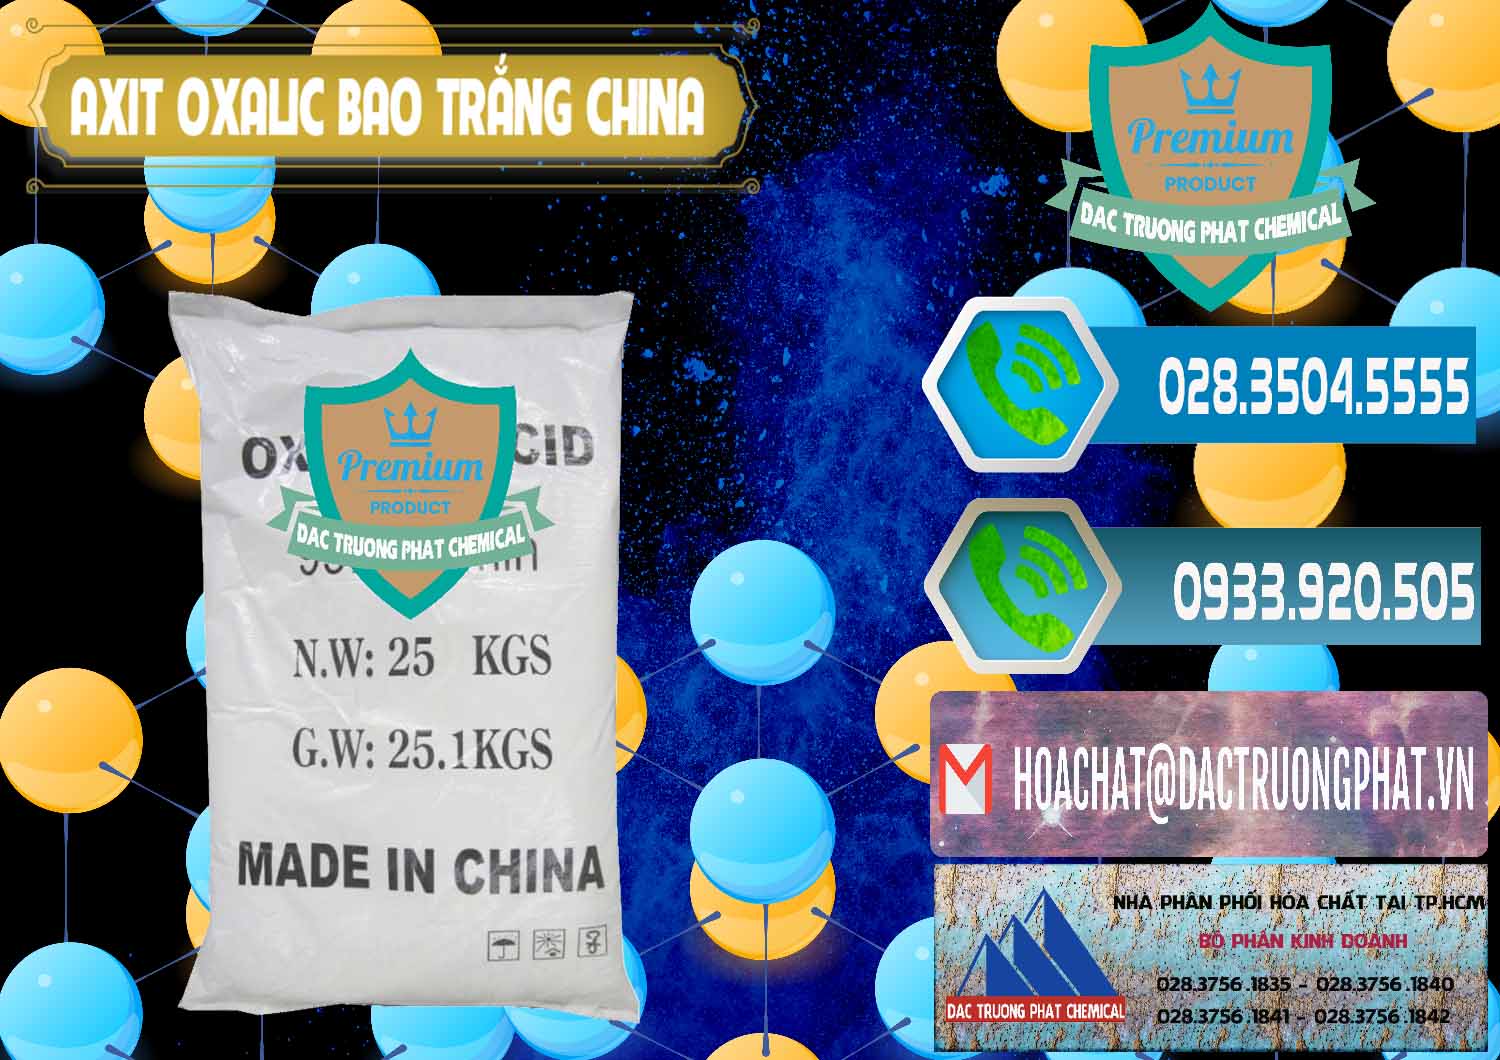 Cty chuyên kinh doanh - bán Acid Oxalic – Axit Oxalic 99.6% Bao Trắng Trung Quốc China - 0270 - Chuyên cung ứng và phân phối hóa chất tại TP.HCM - congtyhoachat.net